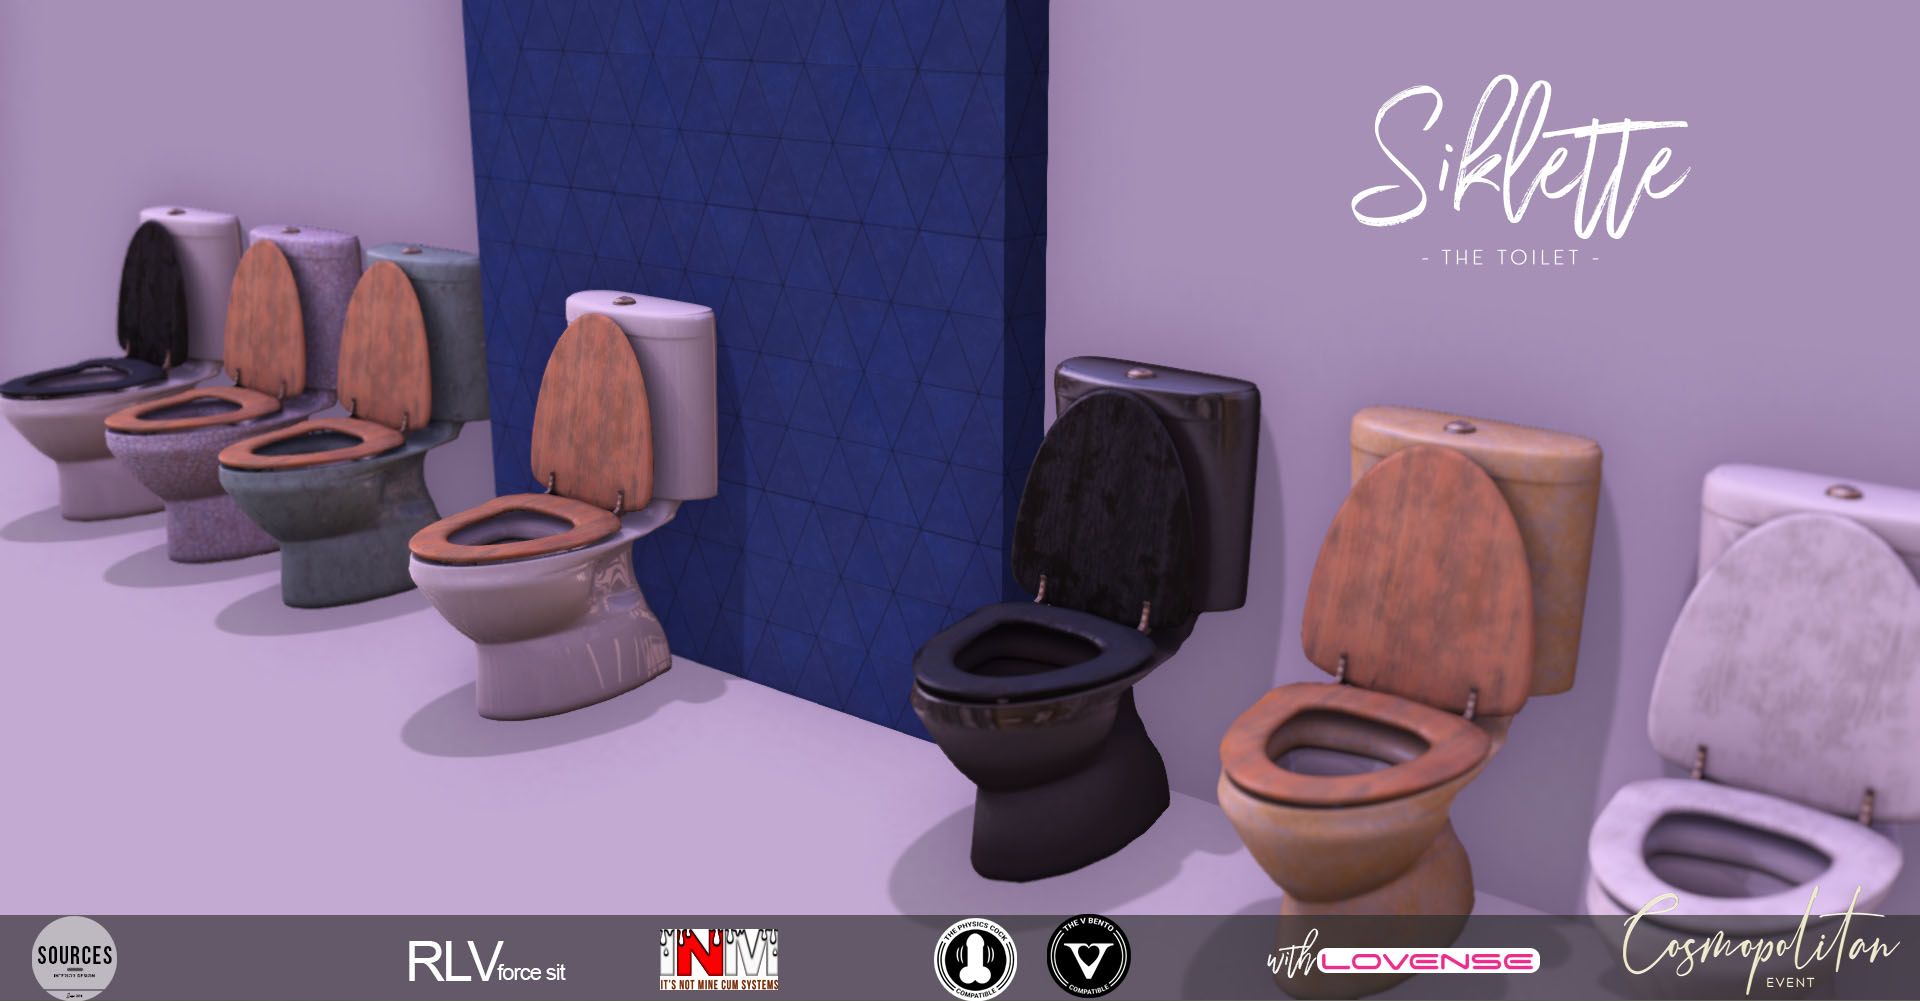 SOURCES – Siklette Toilet